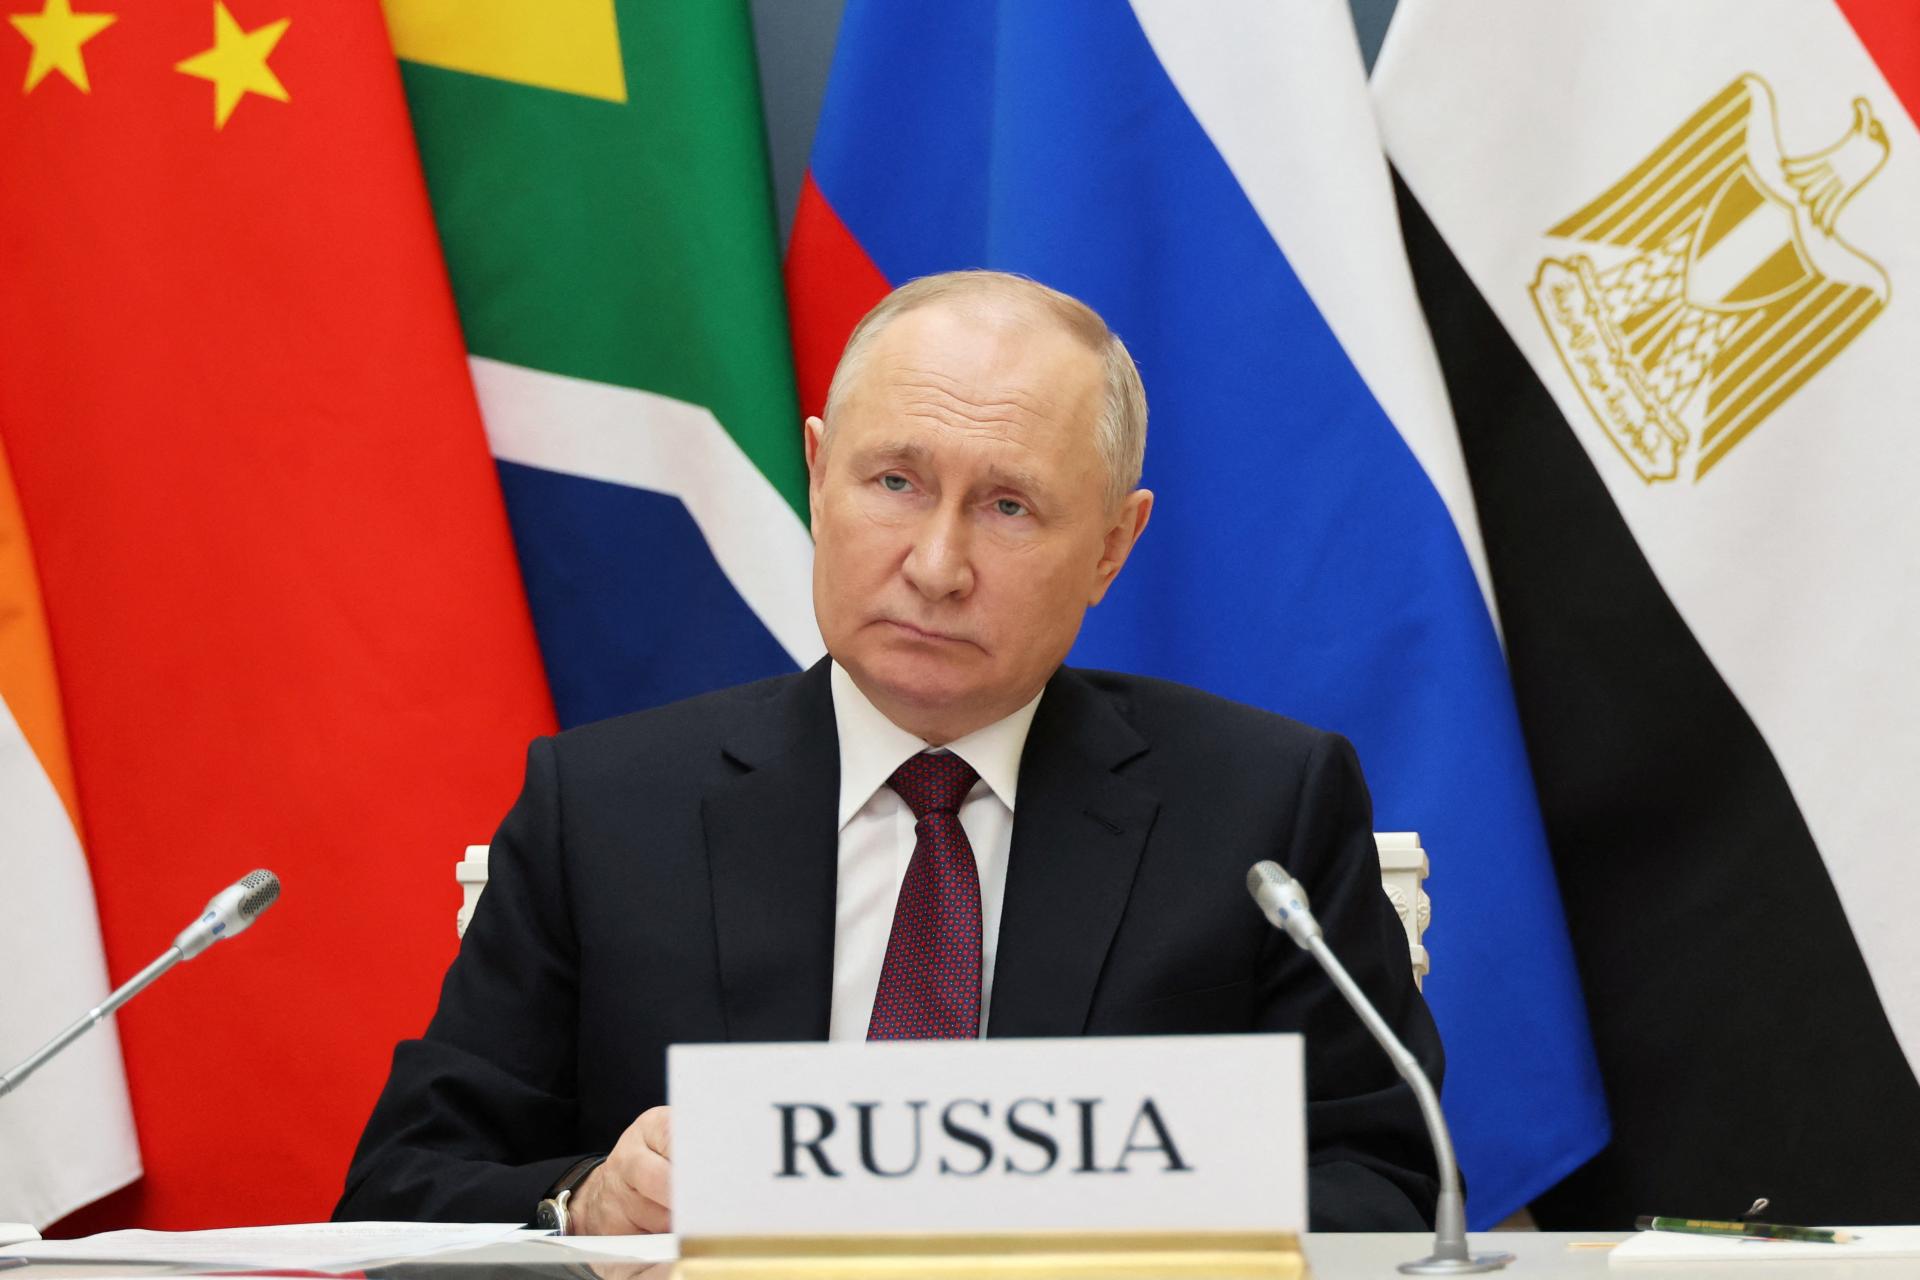 Zoskupenie BRICS by podľa Putina mohlo pomôcť dosiahnuť politické riešenie konfliktu v Pásme Gazy